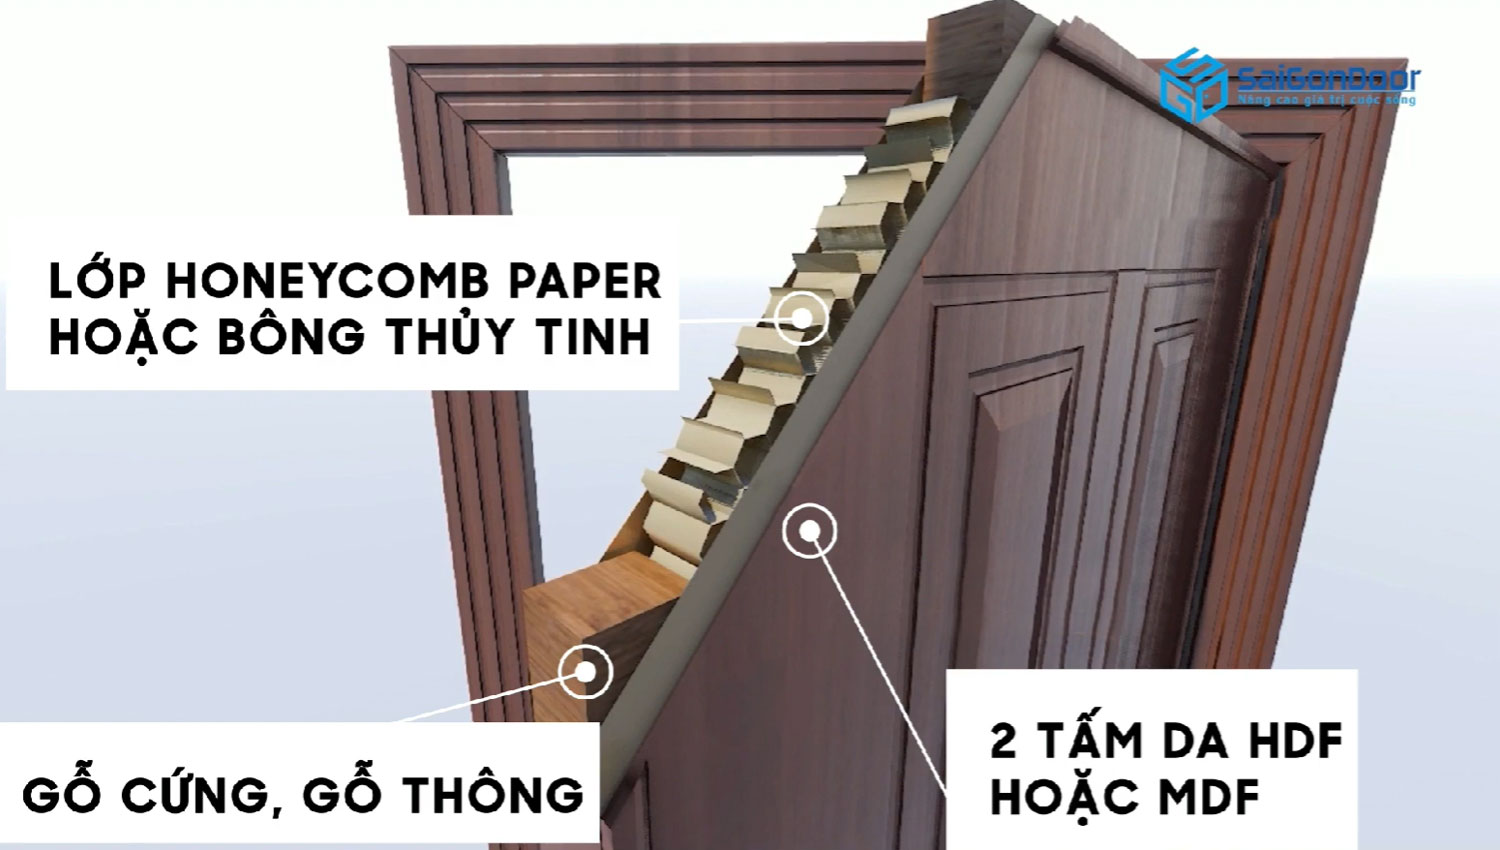 Cấu tạo cửa gỗ công nghiệp gồm 3 phần: Cánh cửa, khung bao nẹp cửa, phụ kiện đi kèm